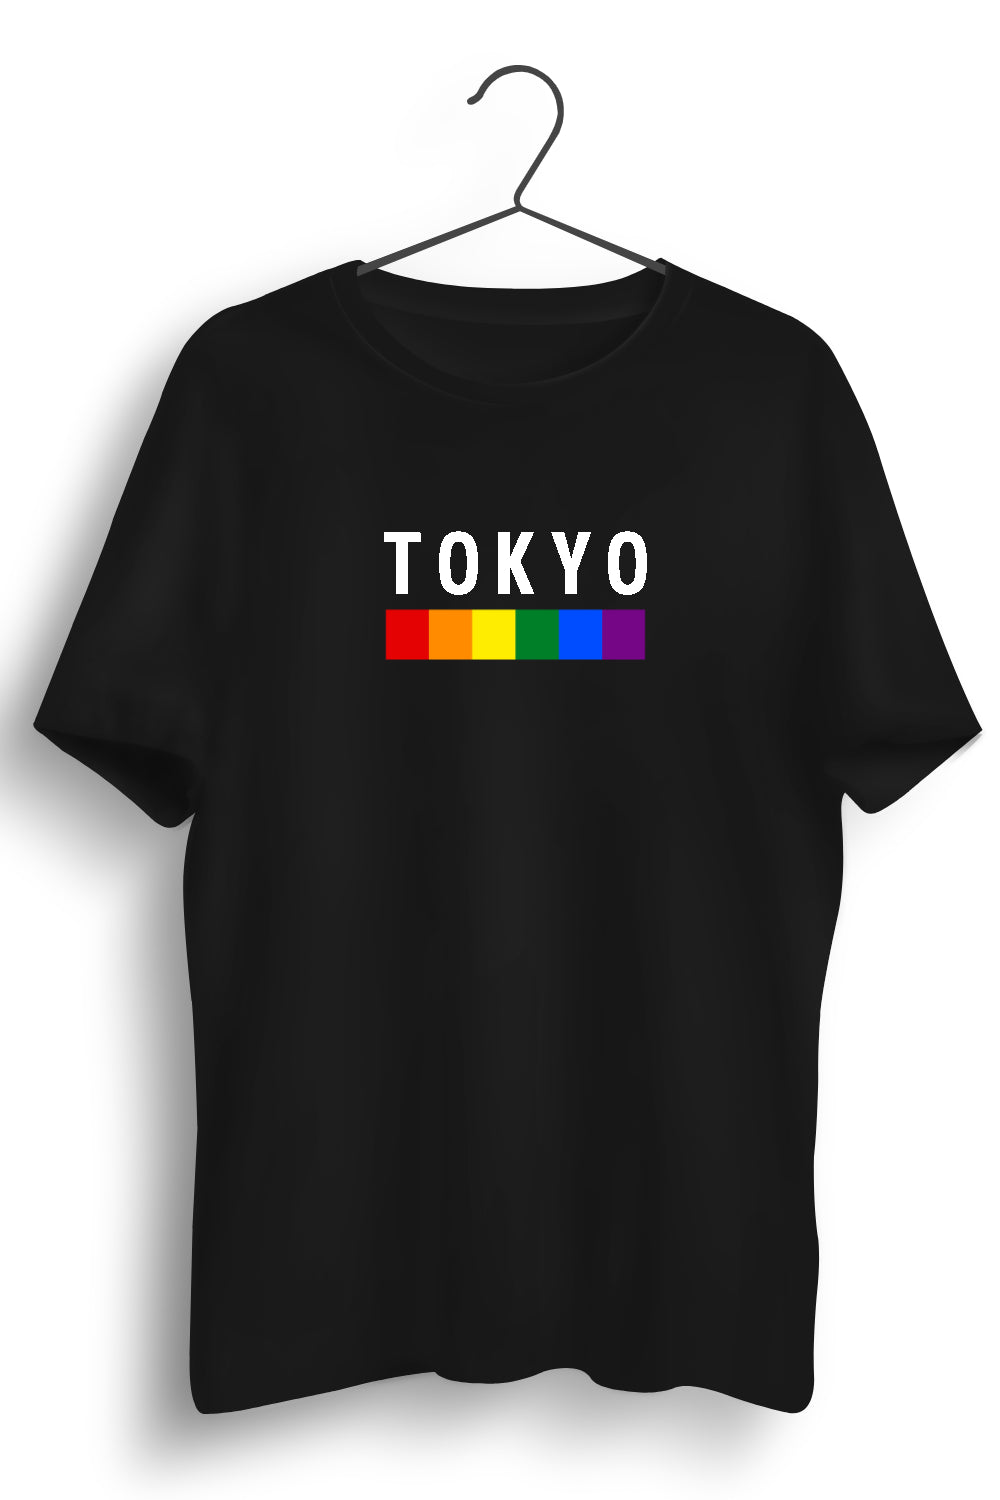 Tokyo Graphic Printed Black Tshirt